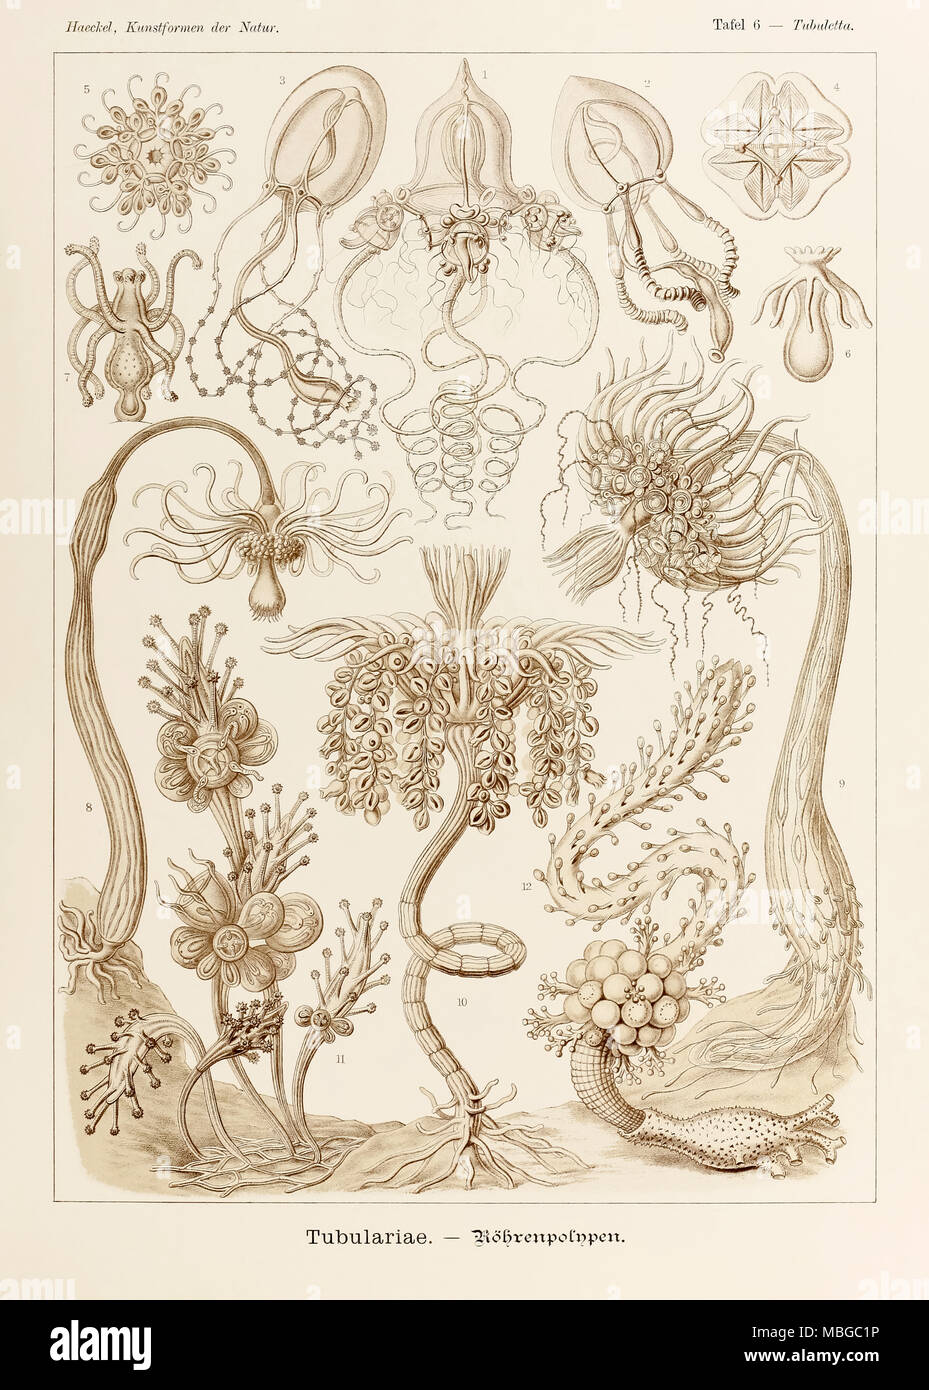 6 Placa Tubuletta Tubulariae desde "Kunstformen der Natur" (formas artísticas en la naturaleza), ilustrado por Ernst Haeckel (1834-1919). Ver más información a continuación. Foto de stock